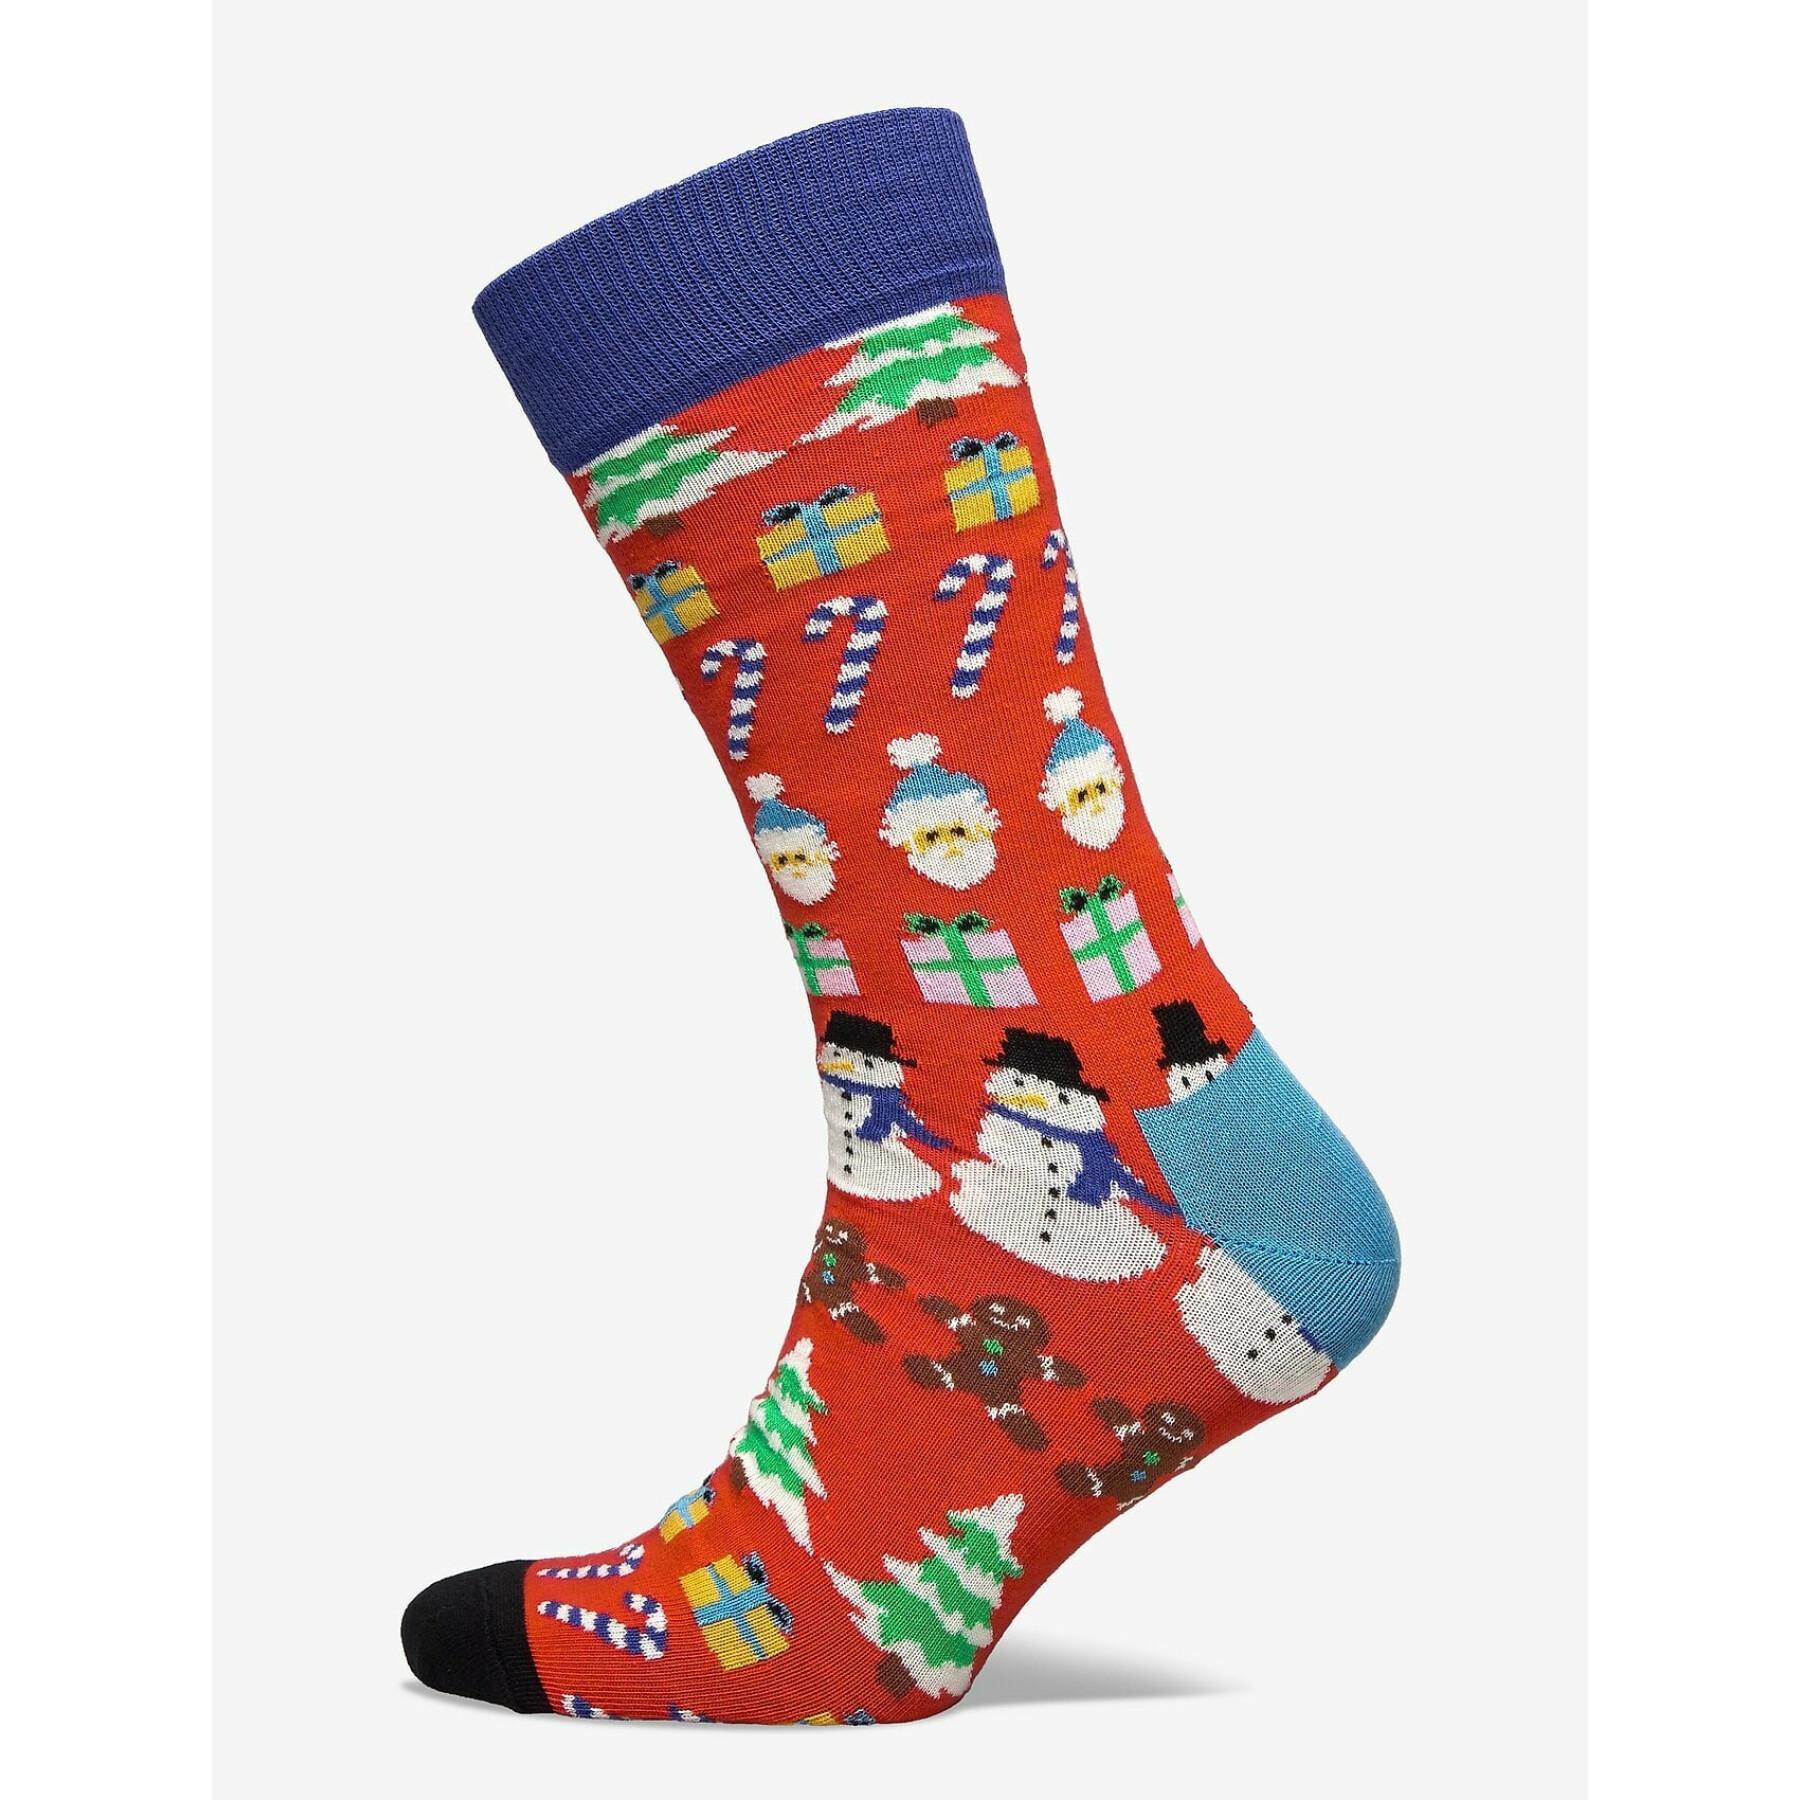 Socken Happy socks All i want for chrismas